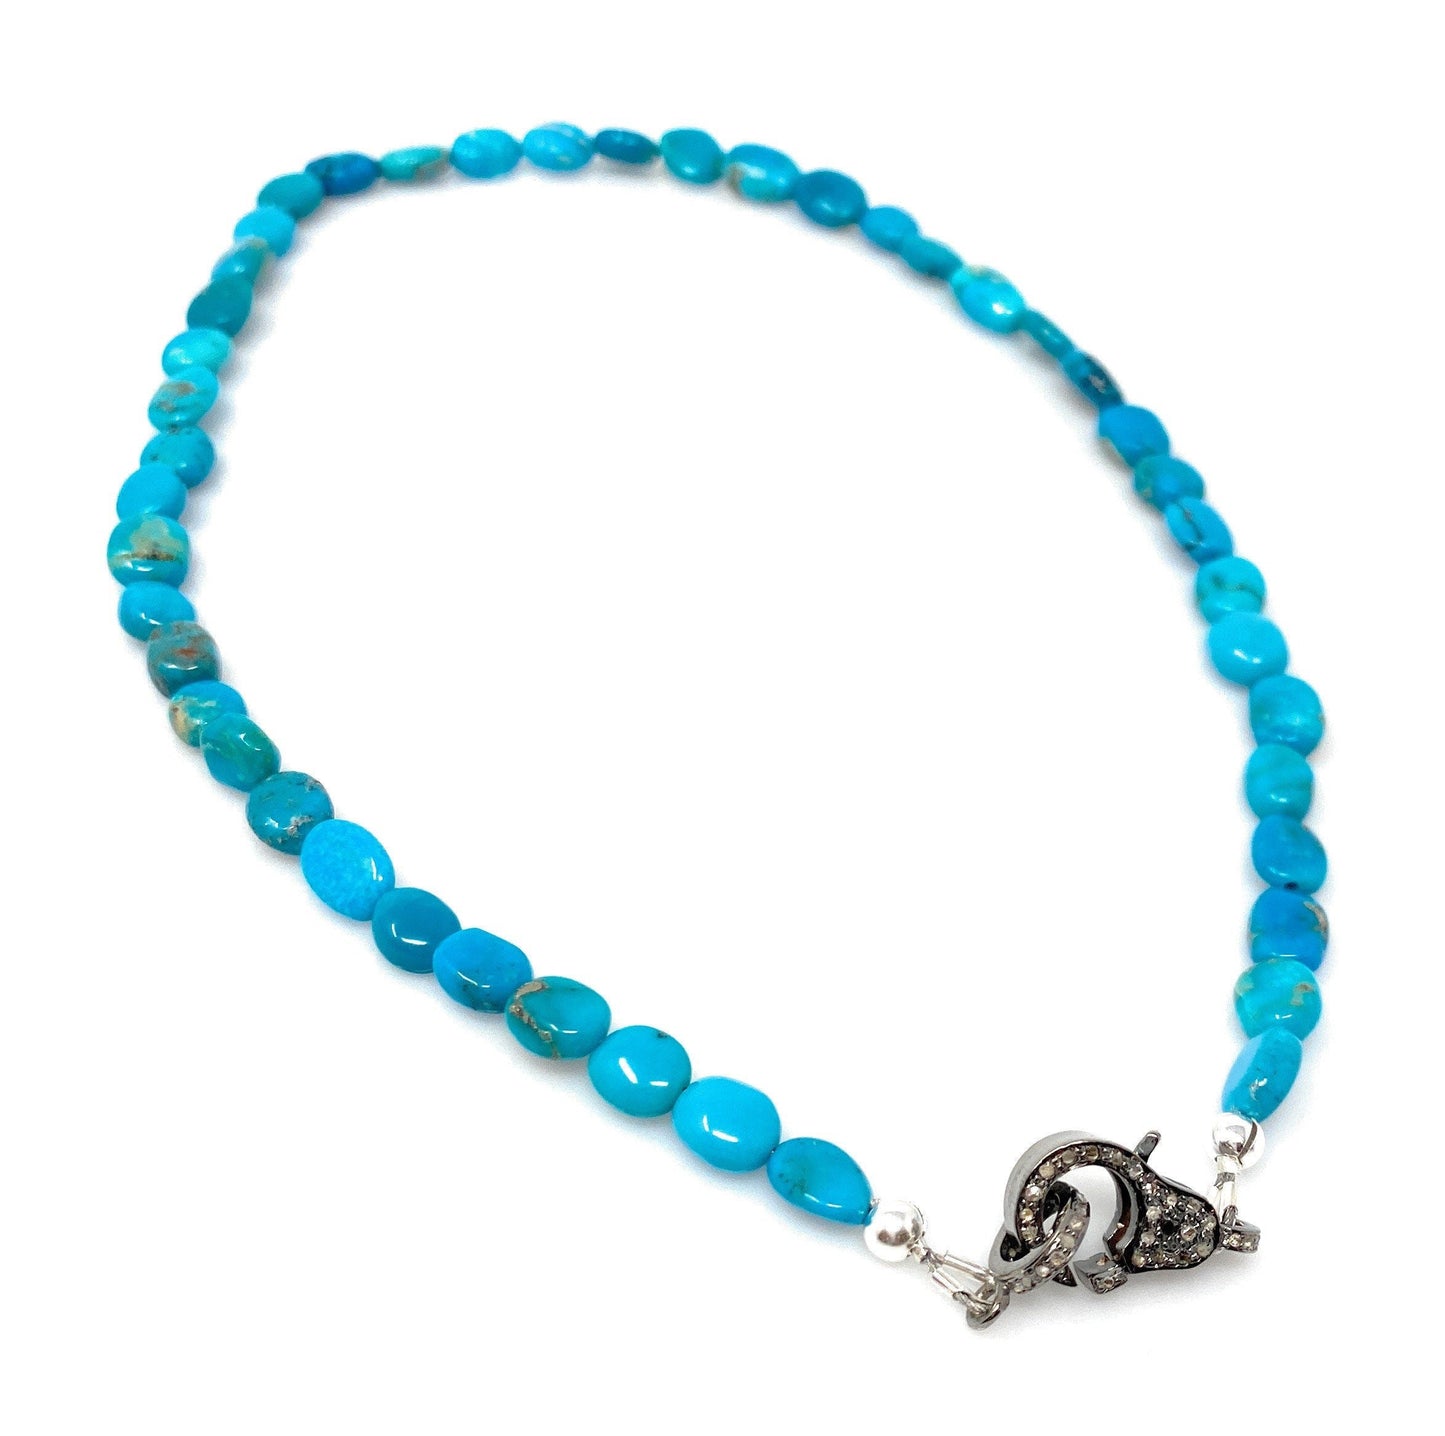 17” Genuine Arizona Turquoise Necklace with Pave Diamond Clasp,